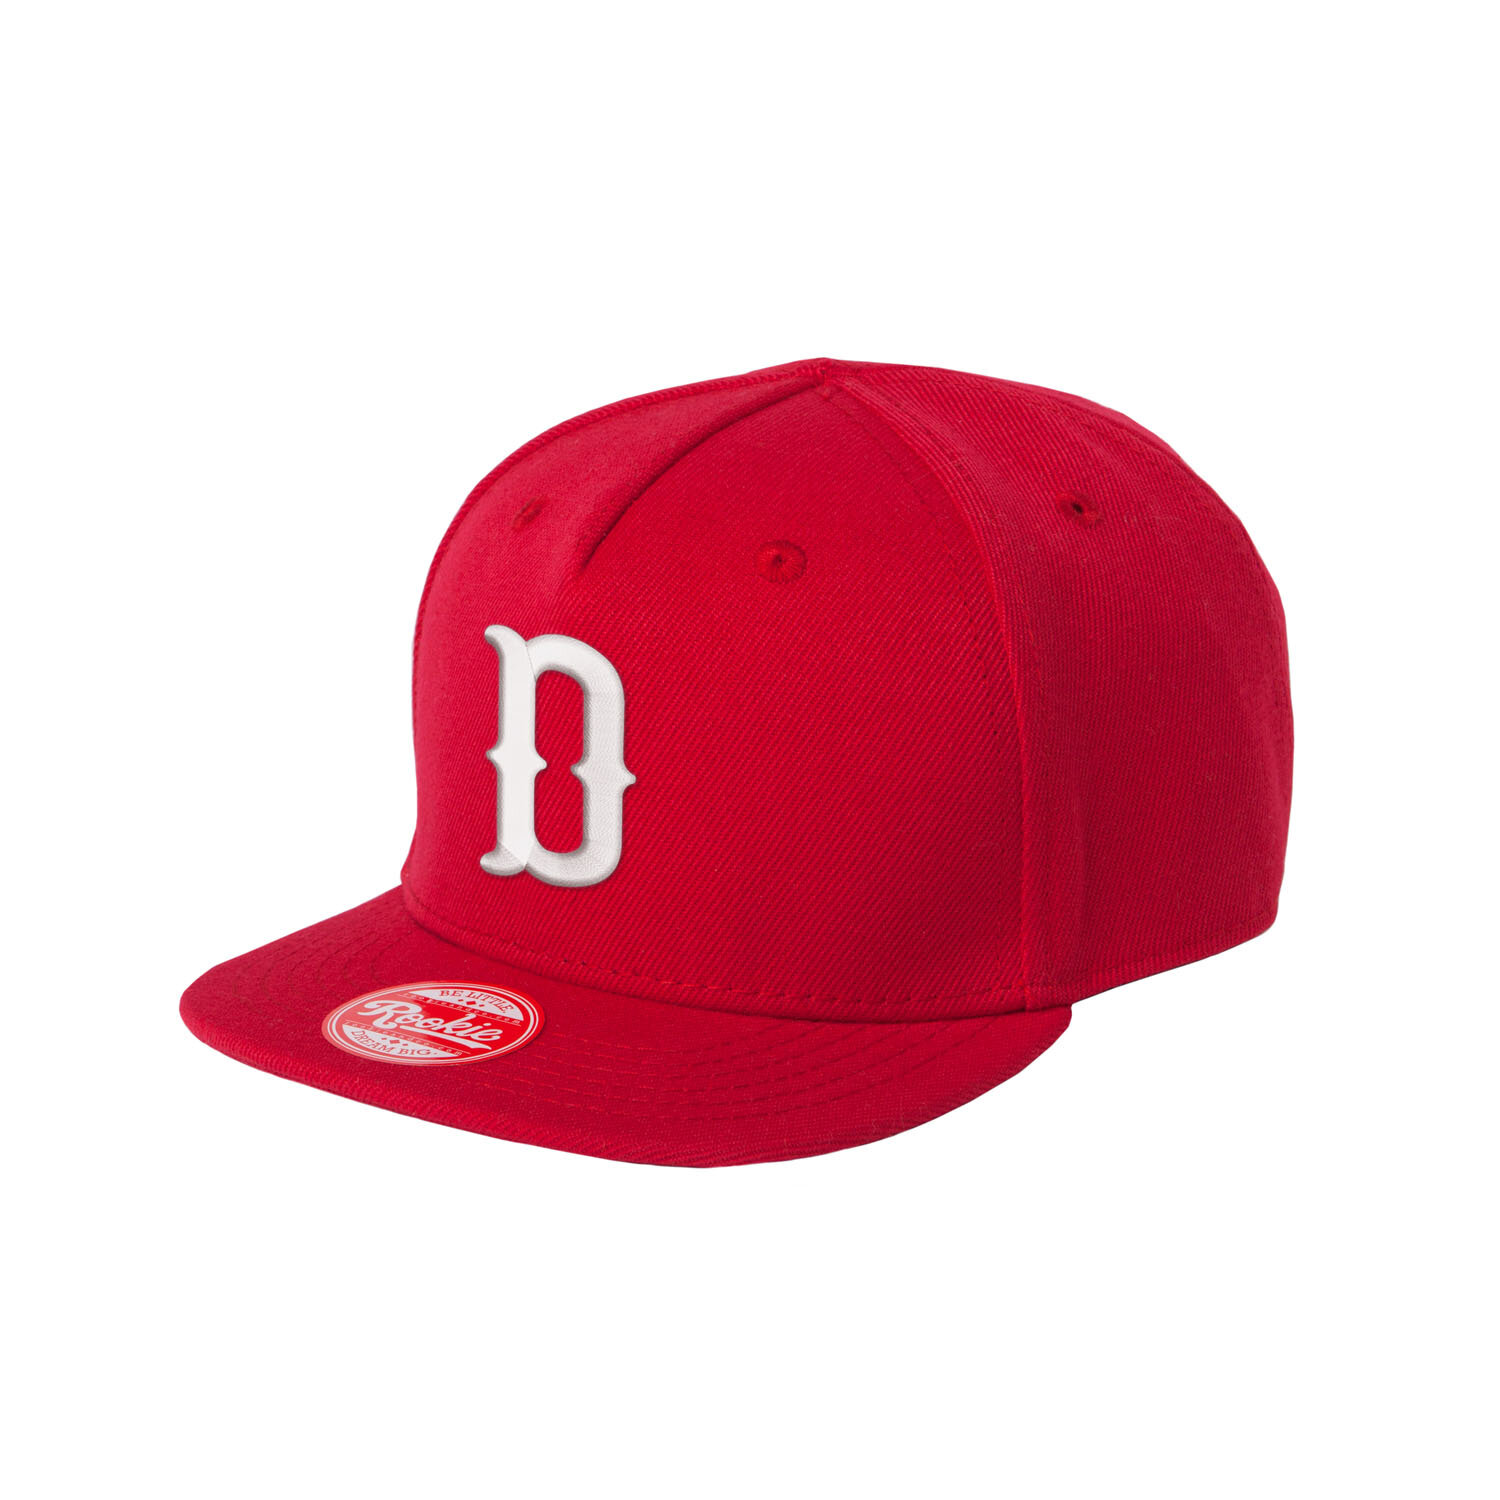 New Era 9Fifty MLB Washington Nationals Basic Red Snapback Hat 11590989 One  Size  Sports  Outdoors  Amazoncom